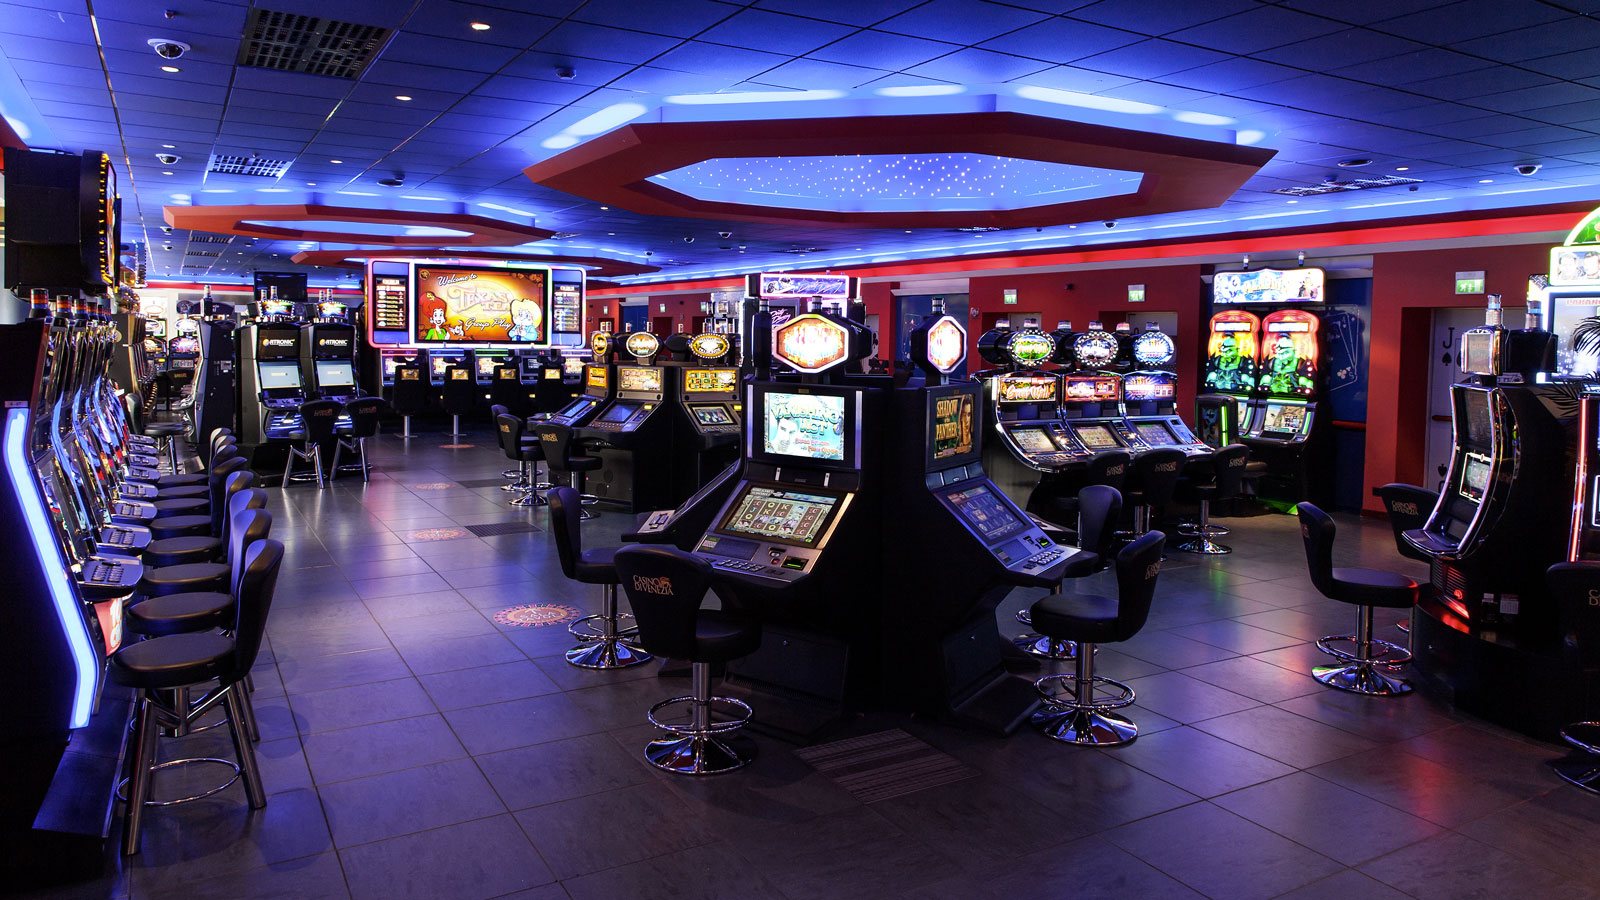 New retro casino официальное зеркало. Зал игровых автоматов Торнадо. Игровые залы казино. Игровой зал автоматы казино. Игровой зал с игровыми автоматами.